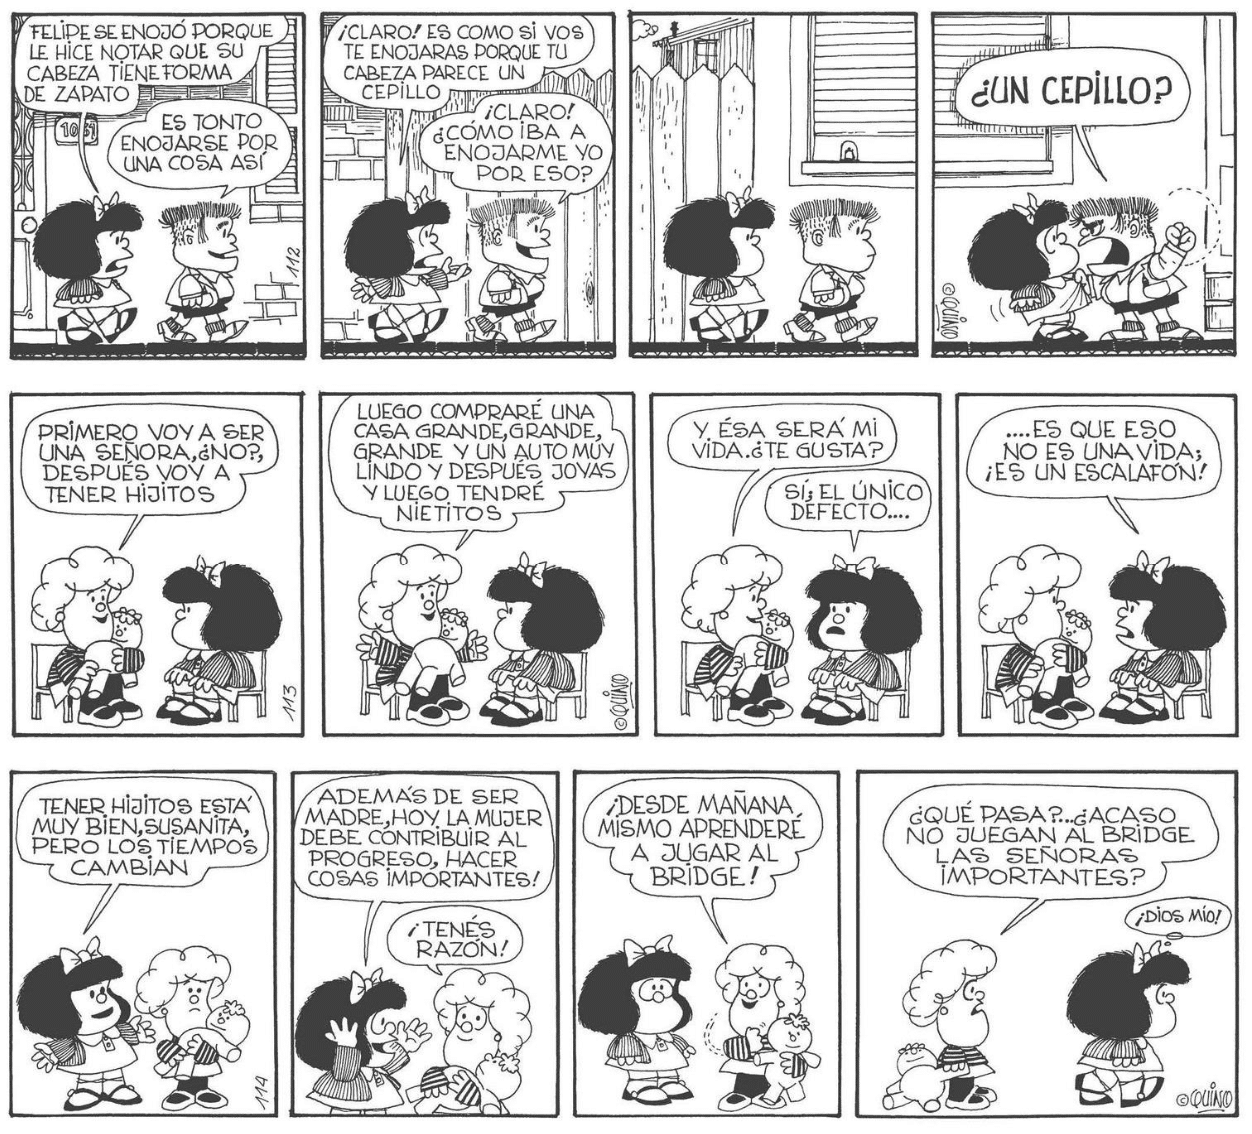 Los invidentes también podrán disfrutar de los cómic de Mafalda, ¡por fin en braille! 38